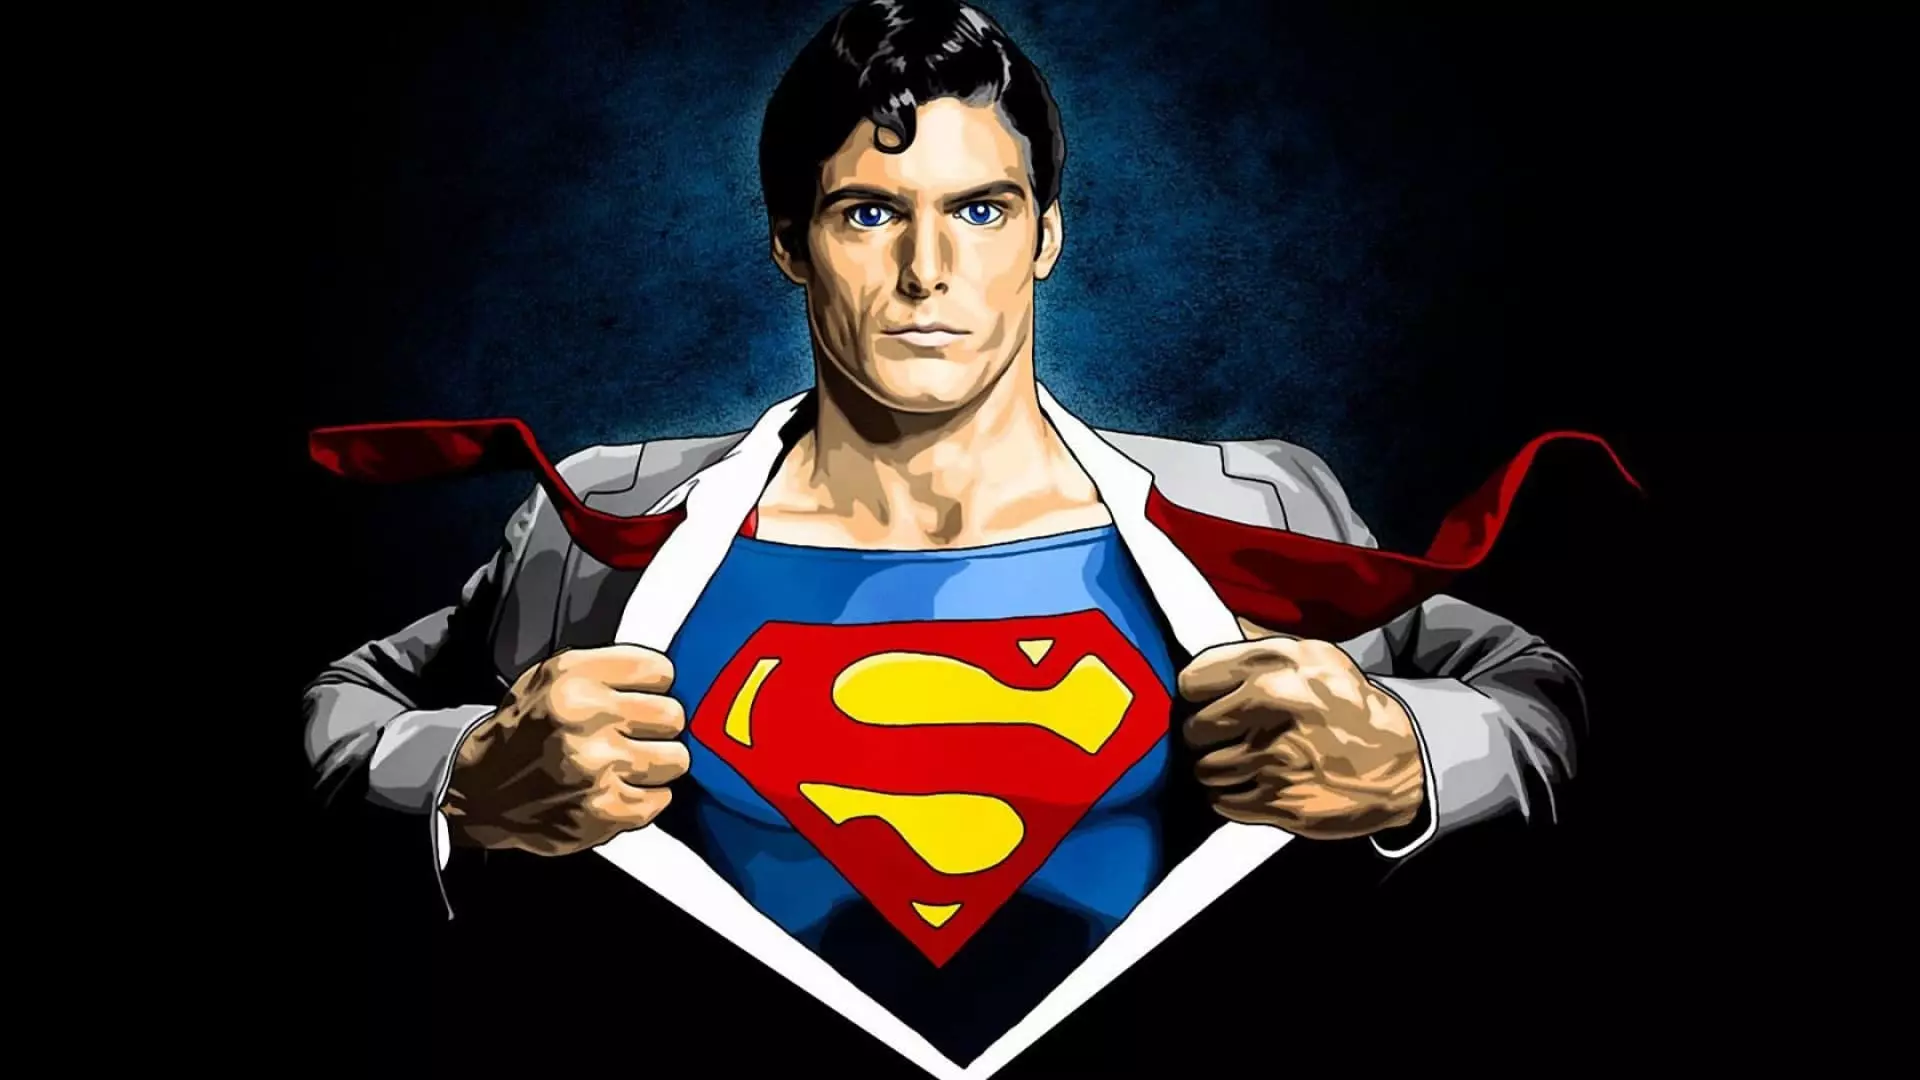 Superman - Historie, Fotos, Film, Skuespillere, Tegneserier